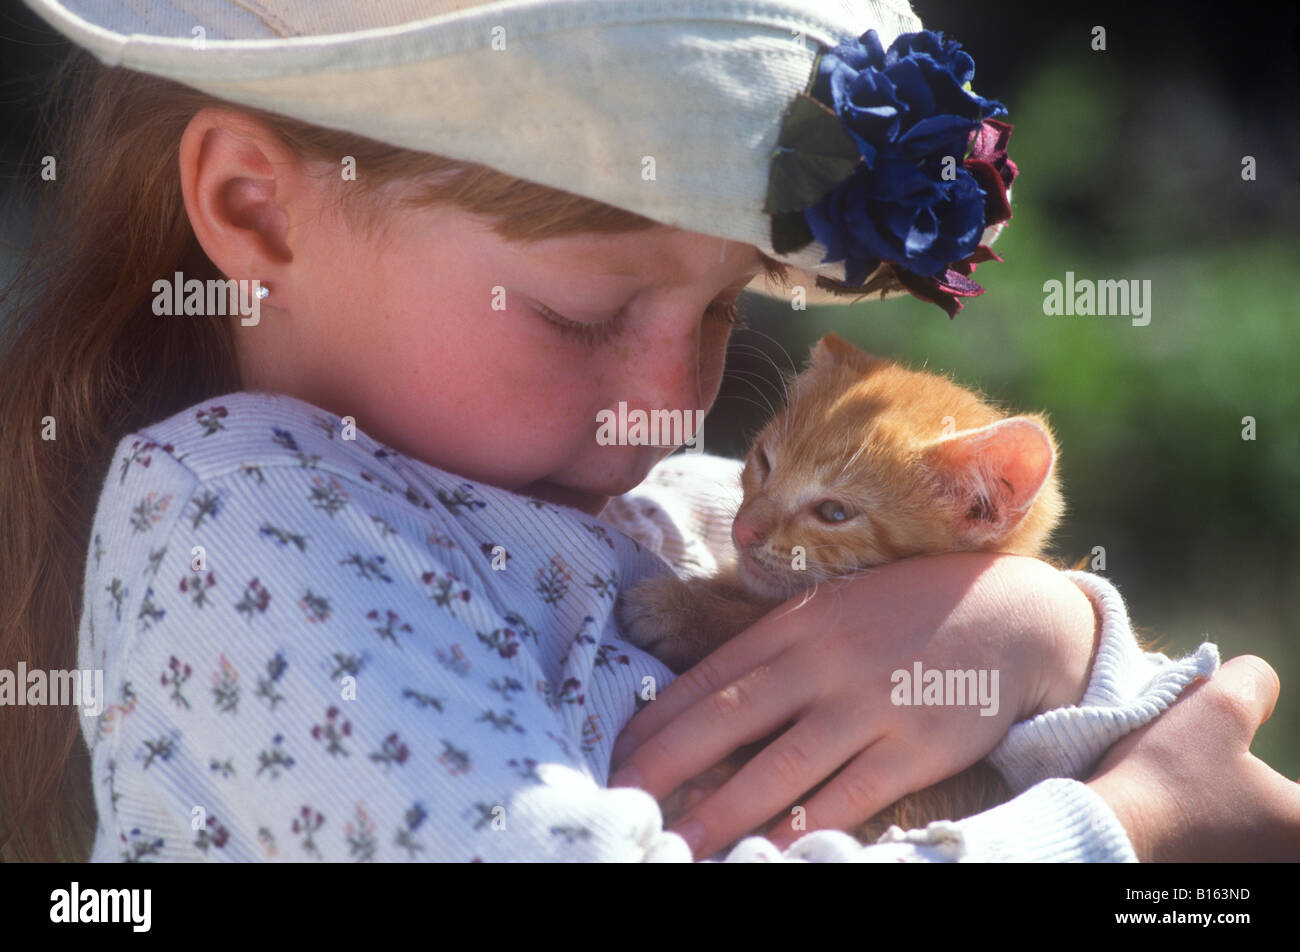 A little girl cuddles a tabby kitten Stock Photo